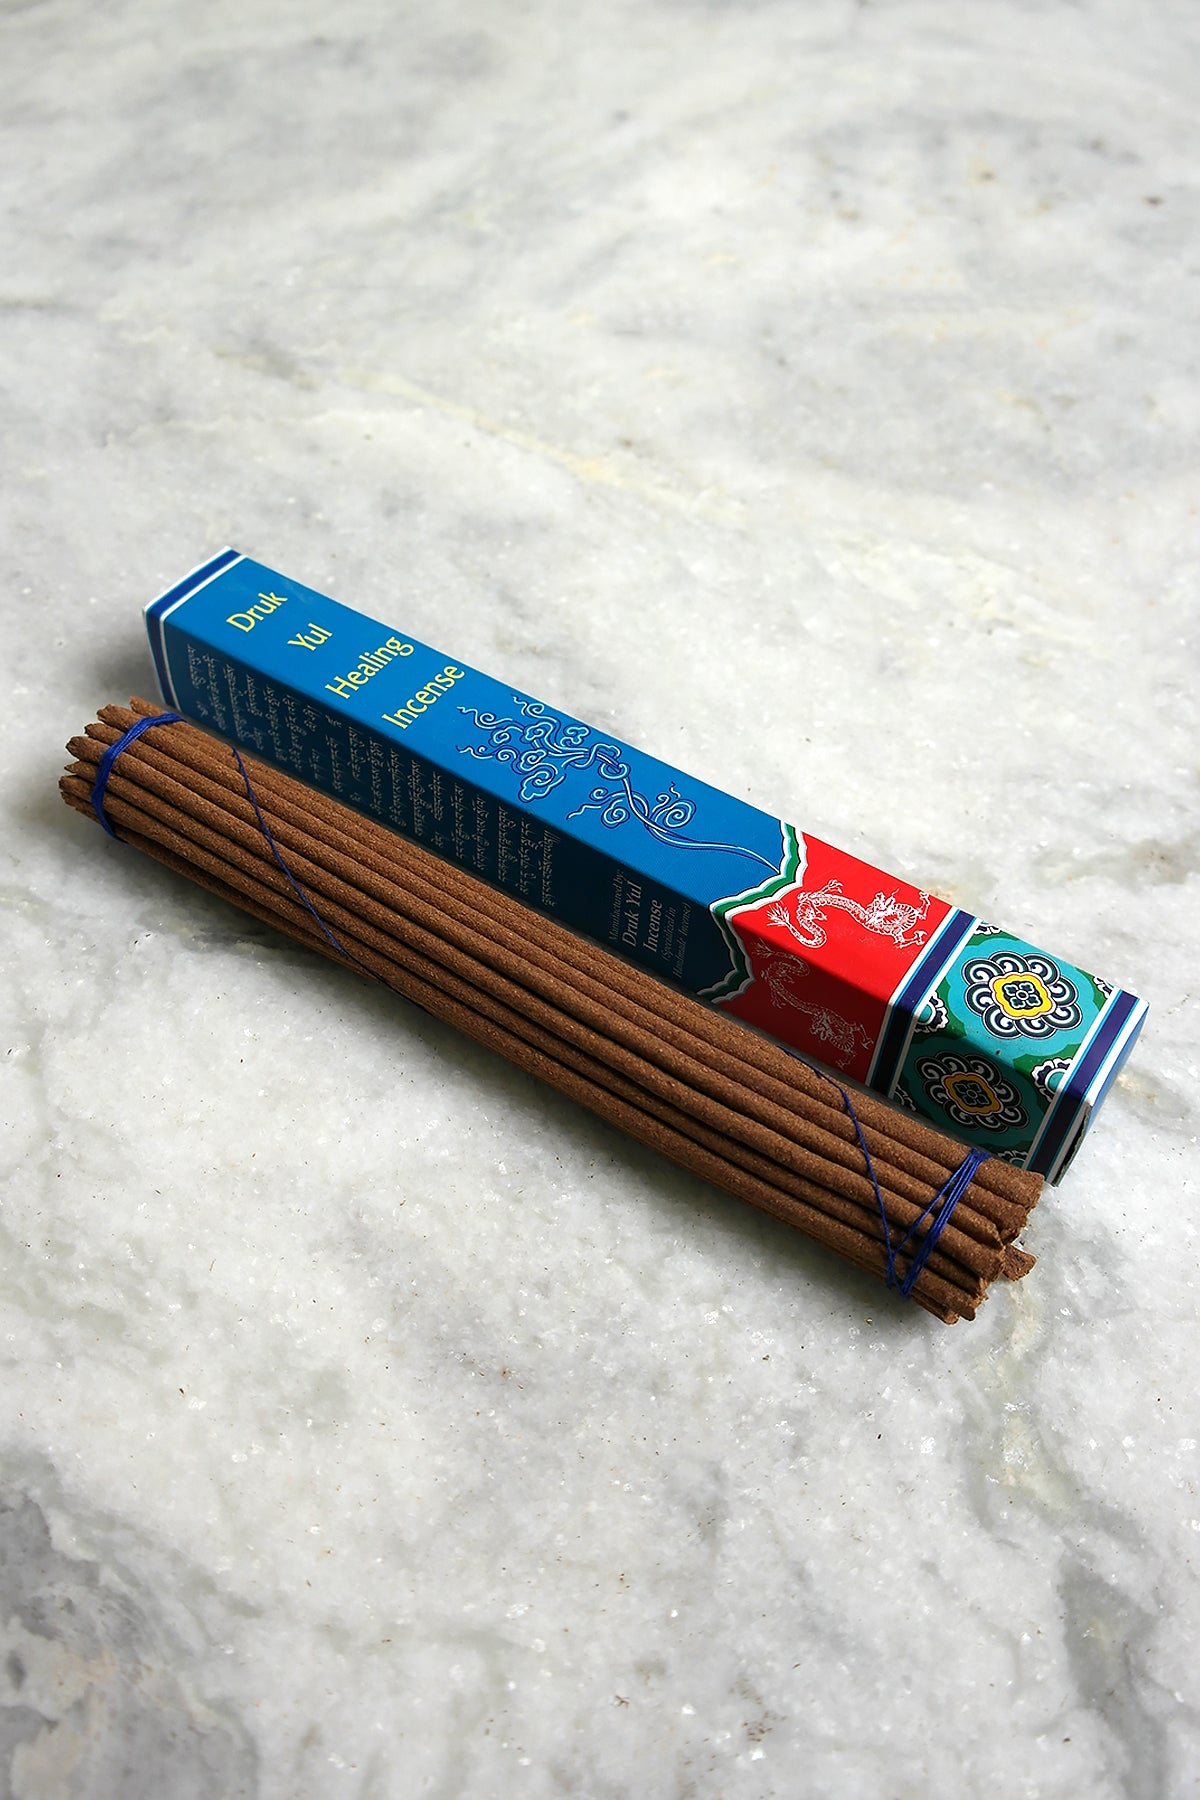 Druk Yul Healing Incense